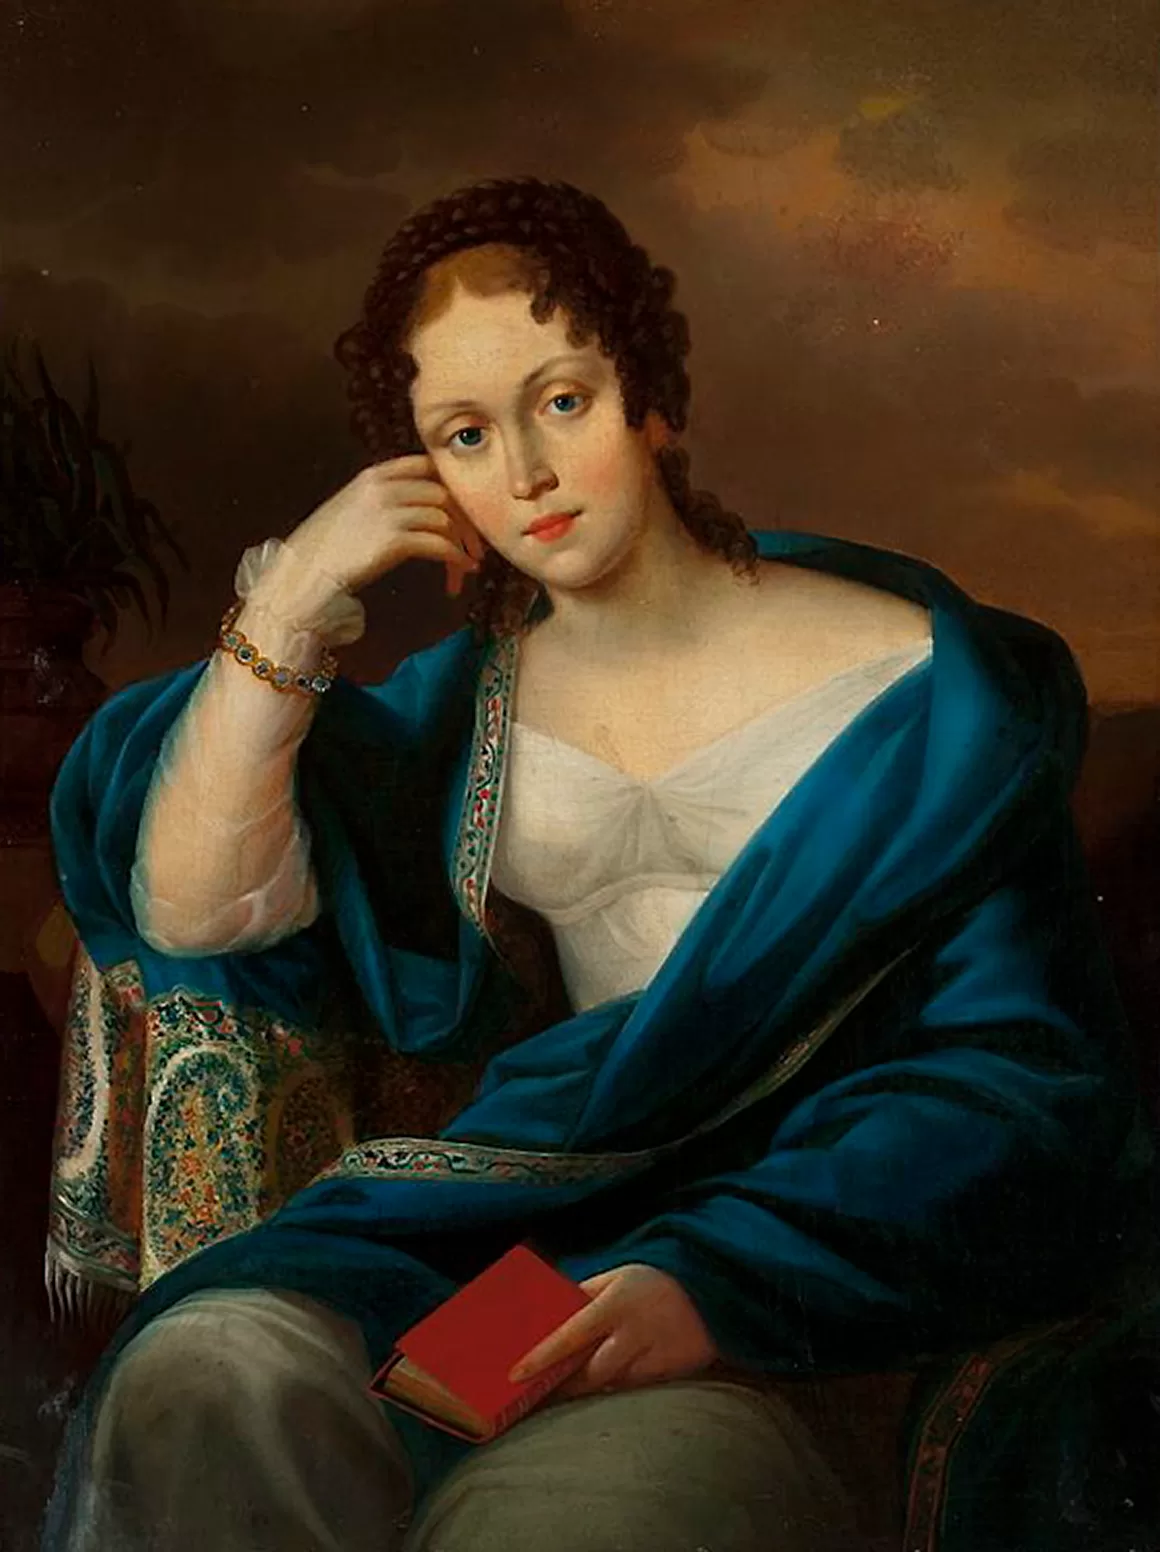 Obraz: Józef Oleszkiewicz, „Portret kobiety”, 1824